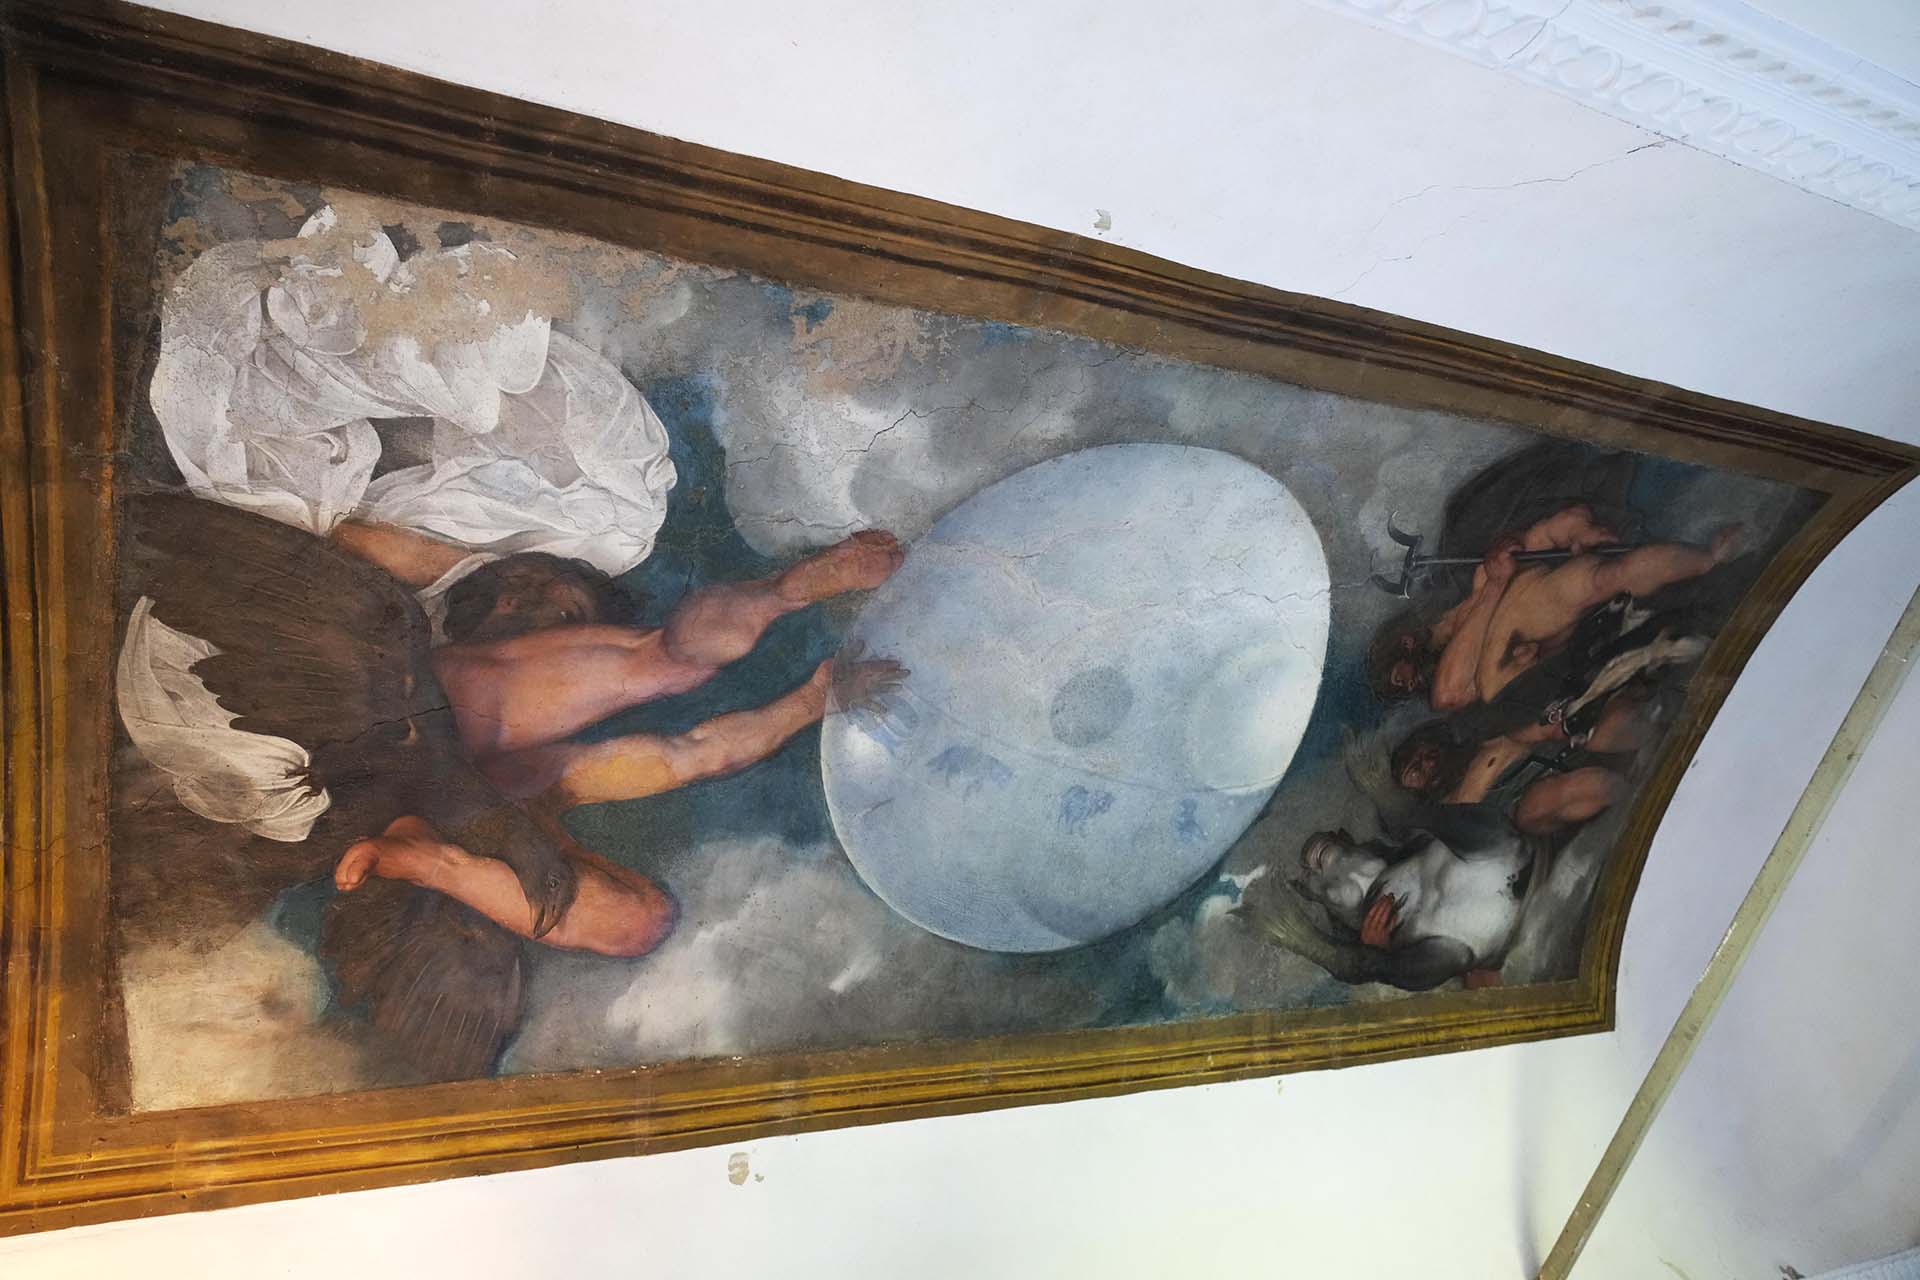 El mural alquímico de Caravaggio dentro del Villa Aurora, también conocida como Villa Ludovisi, en Roma